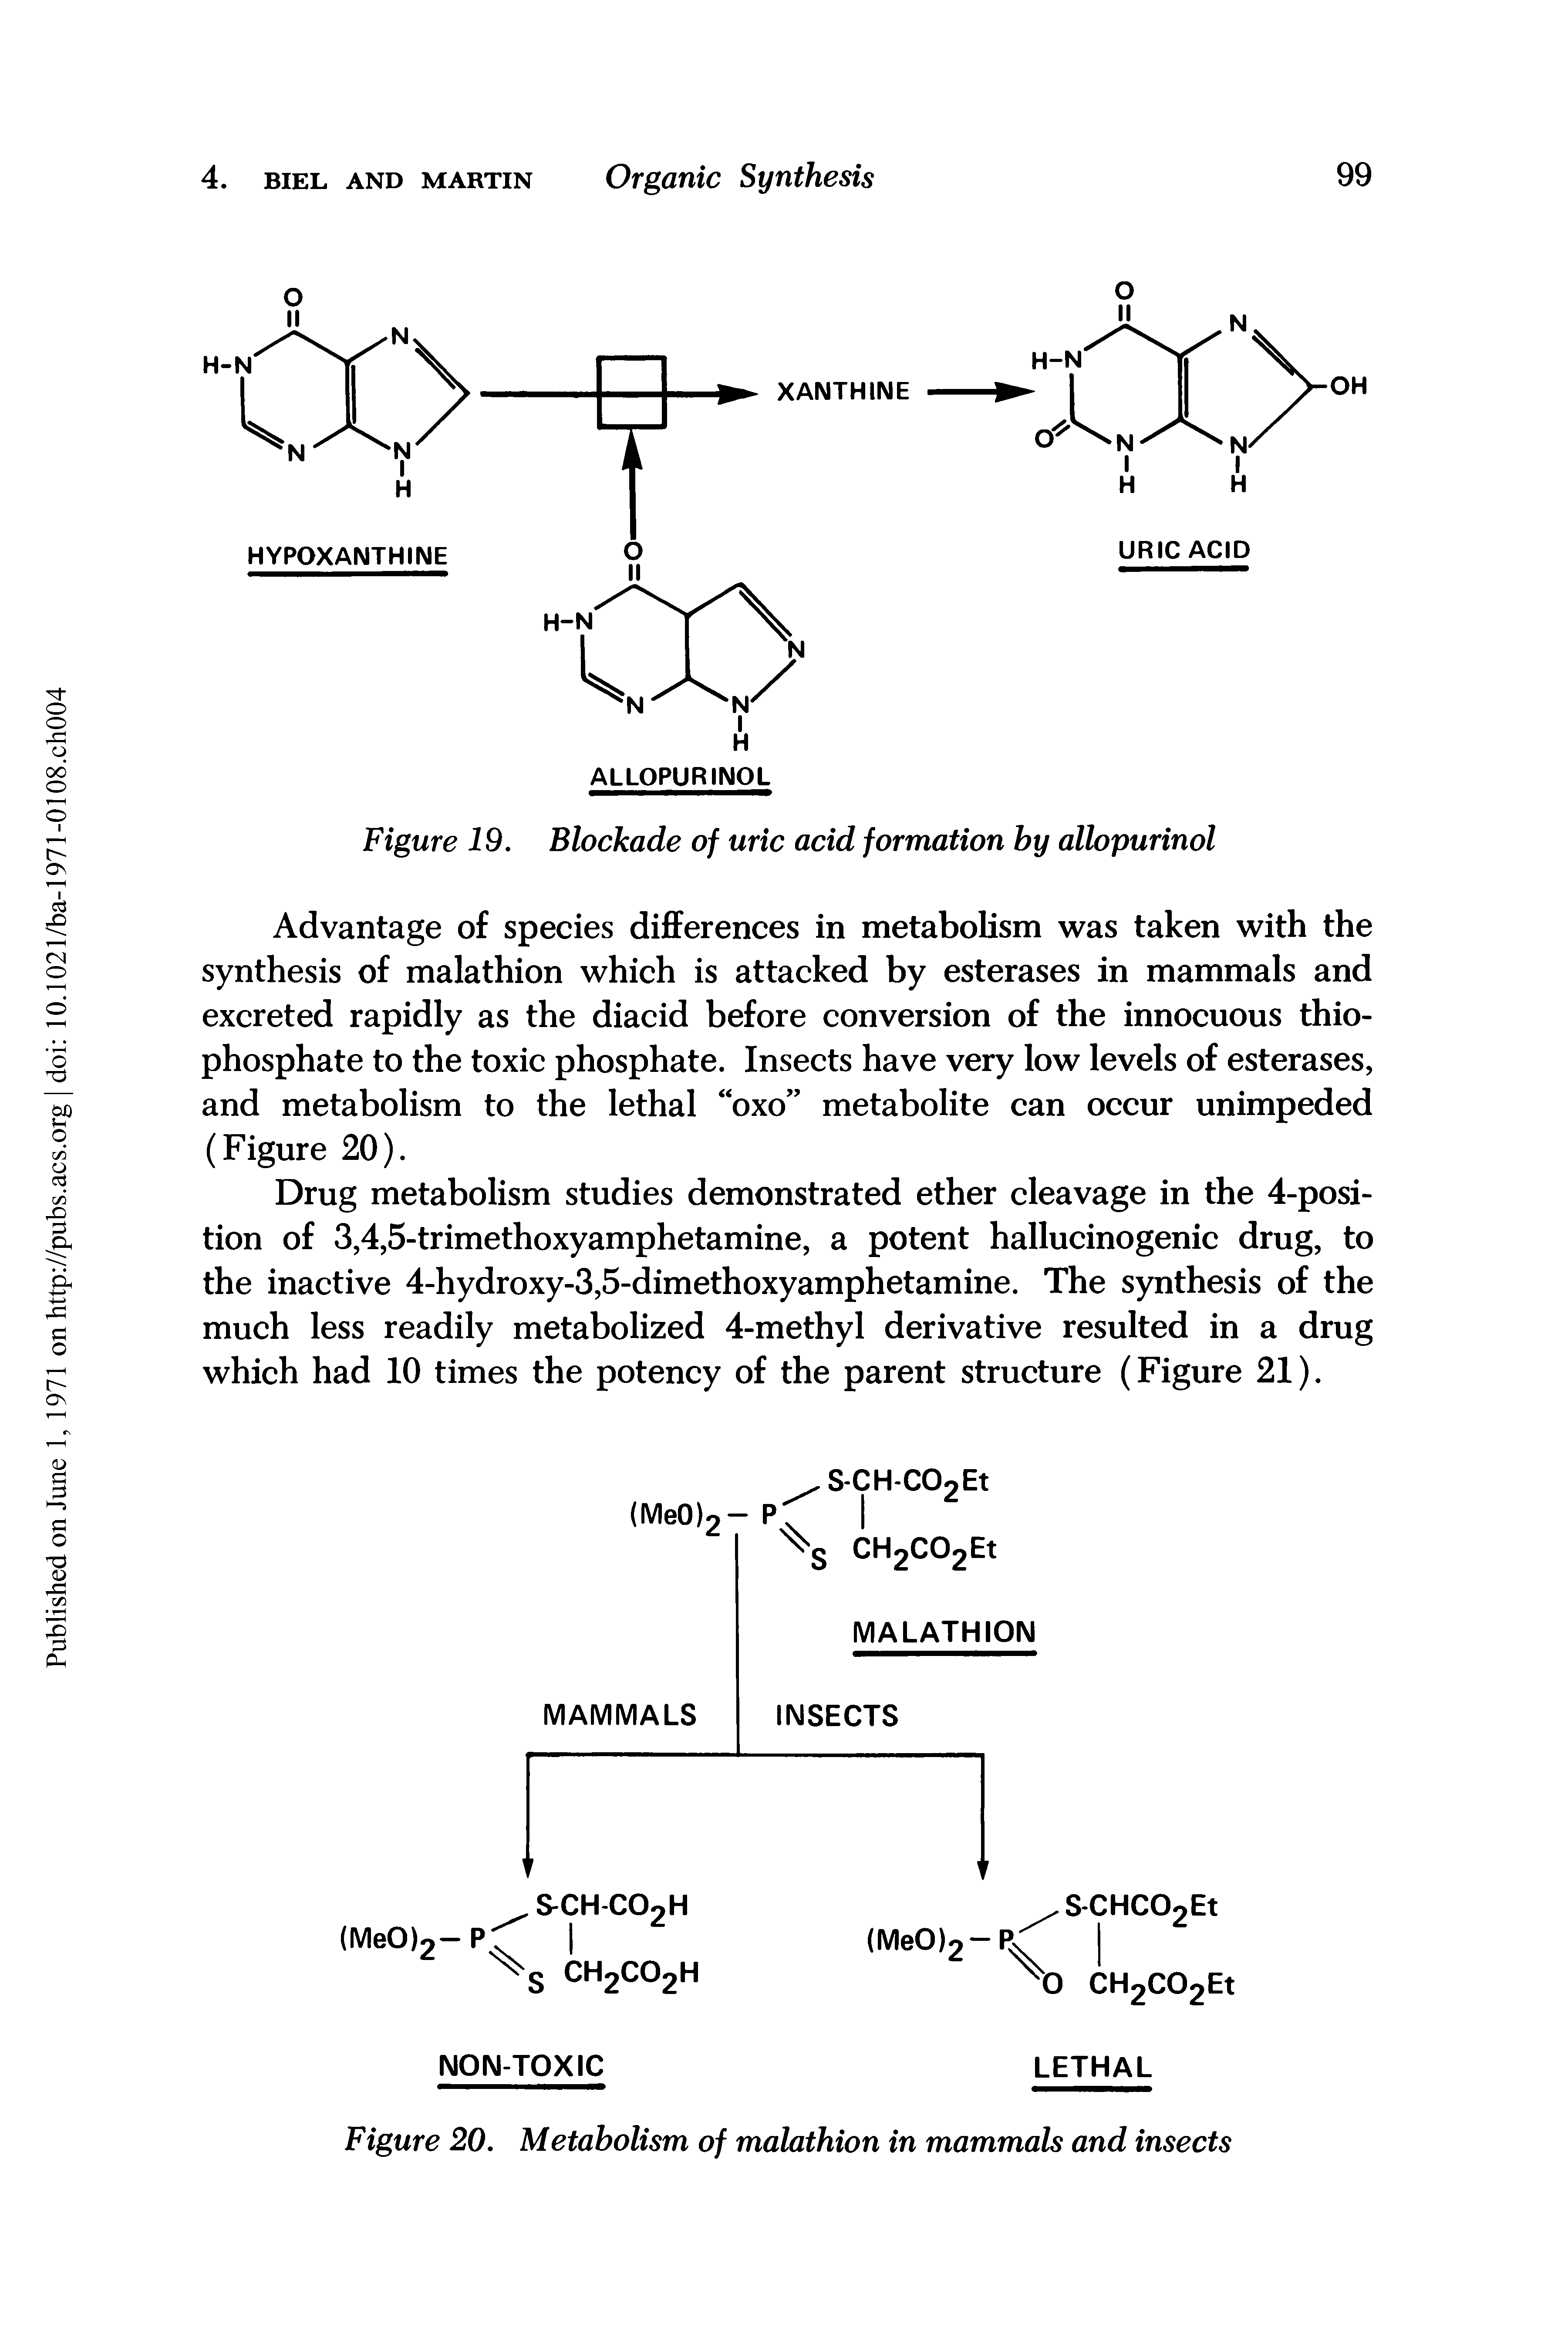 Figure 19. Blockade of uric acid formation by allopurinol...